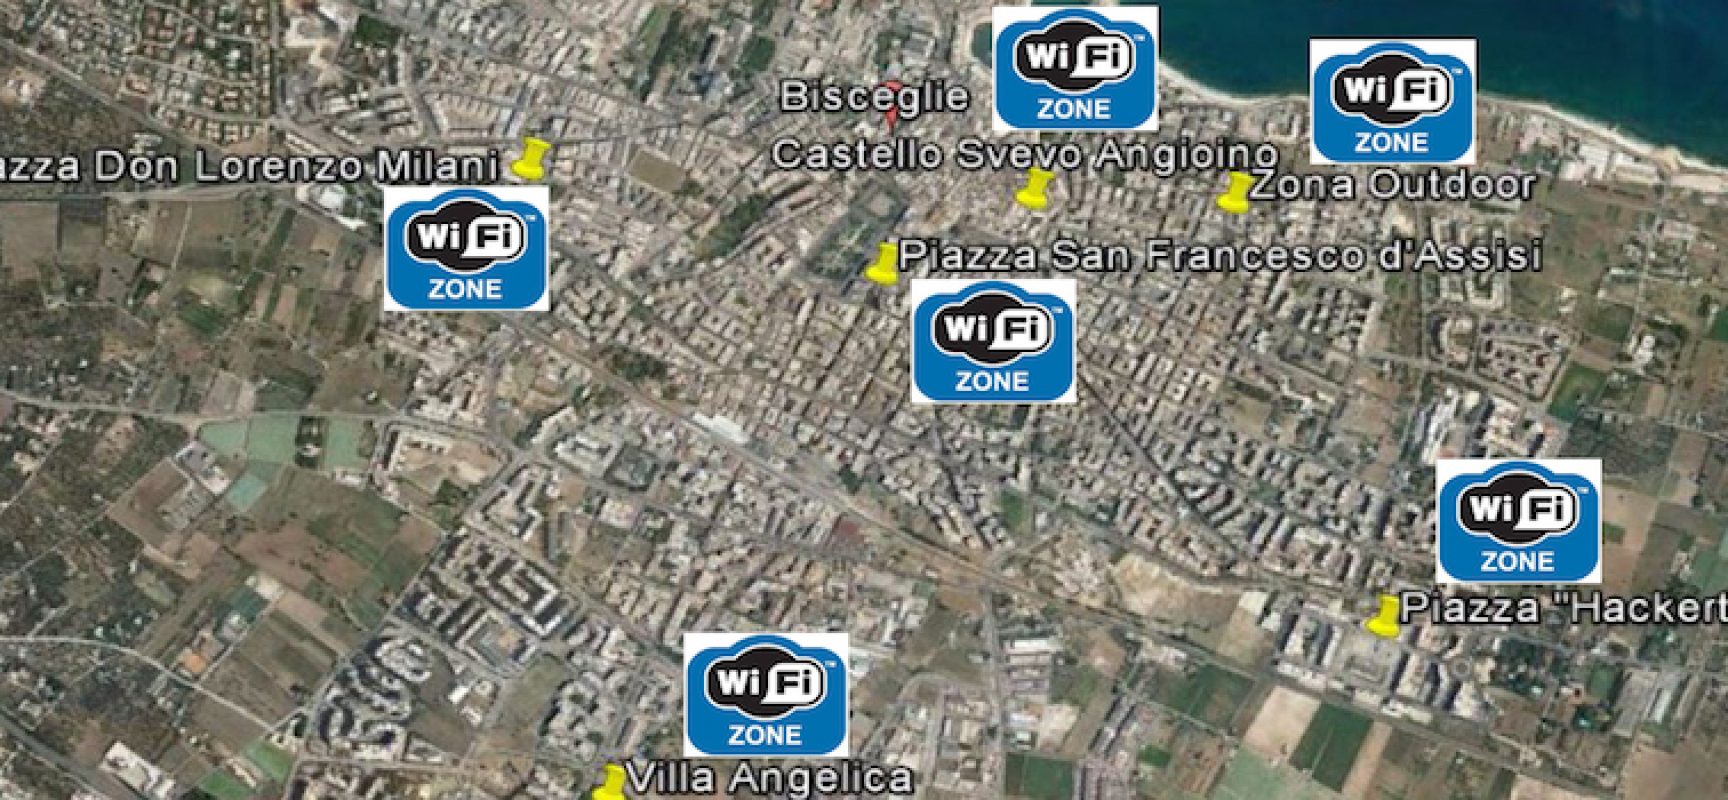 Arriva il Wi-Fi gratuito in città: ecco i nuovi punti di accesso